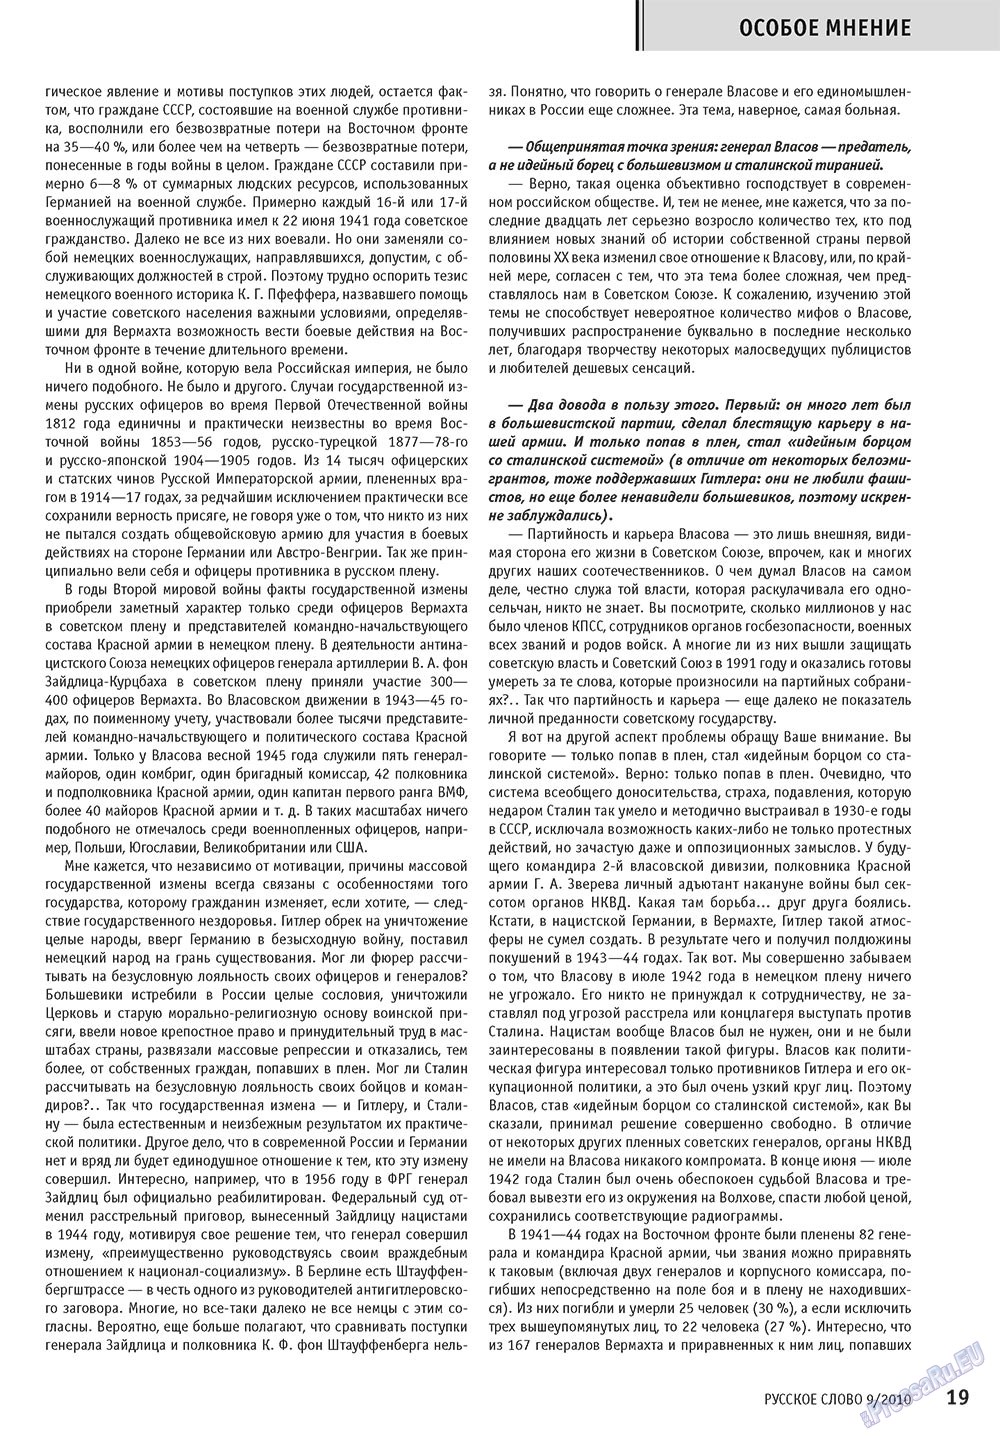 Русское слово, журнал. 2010 №9 стр.21